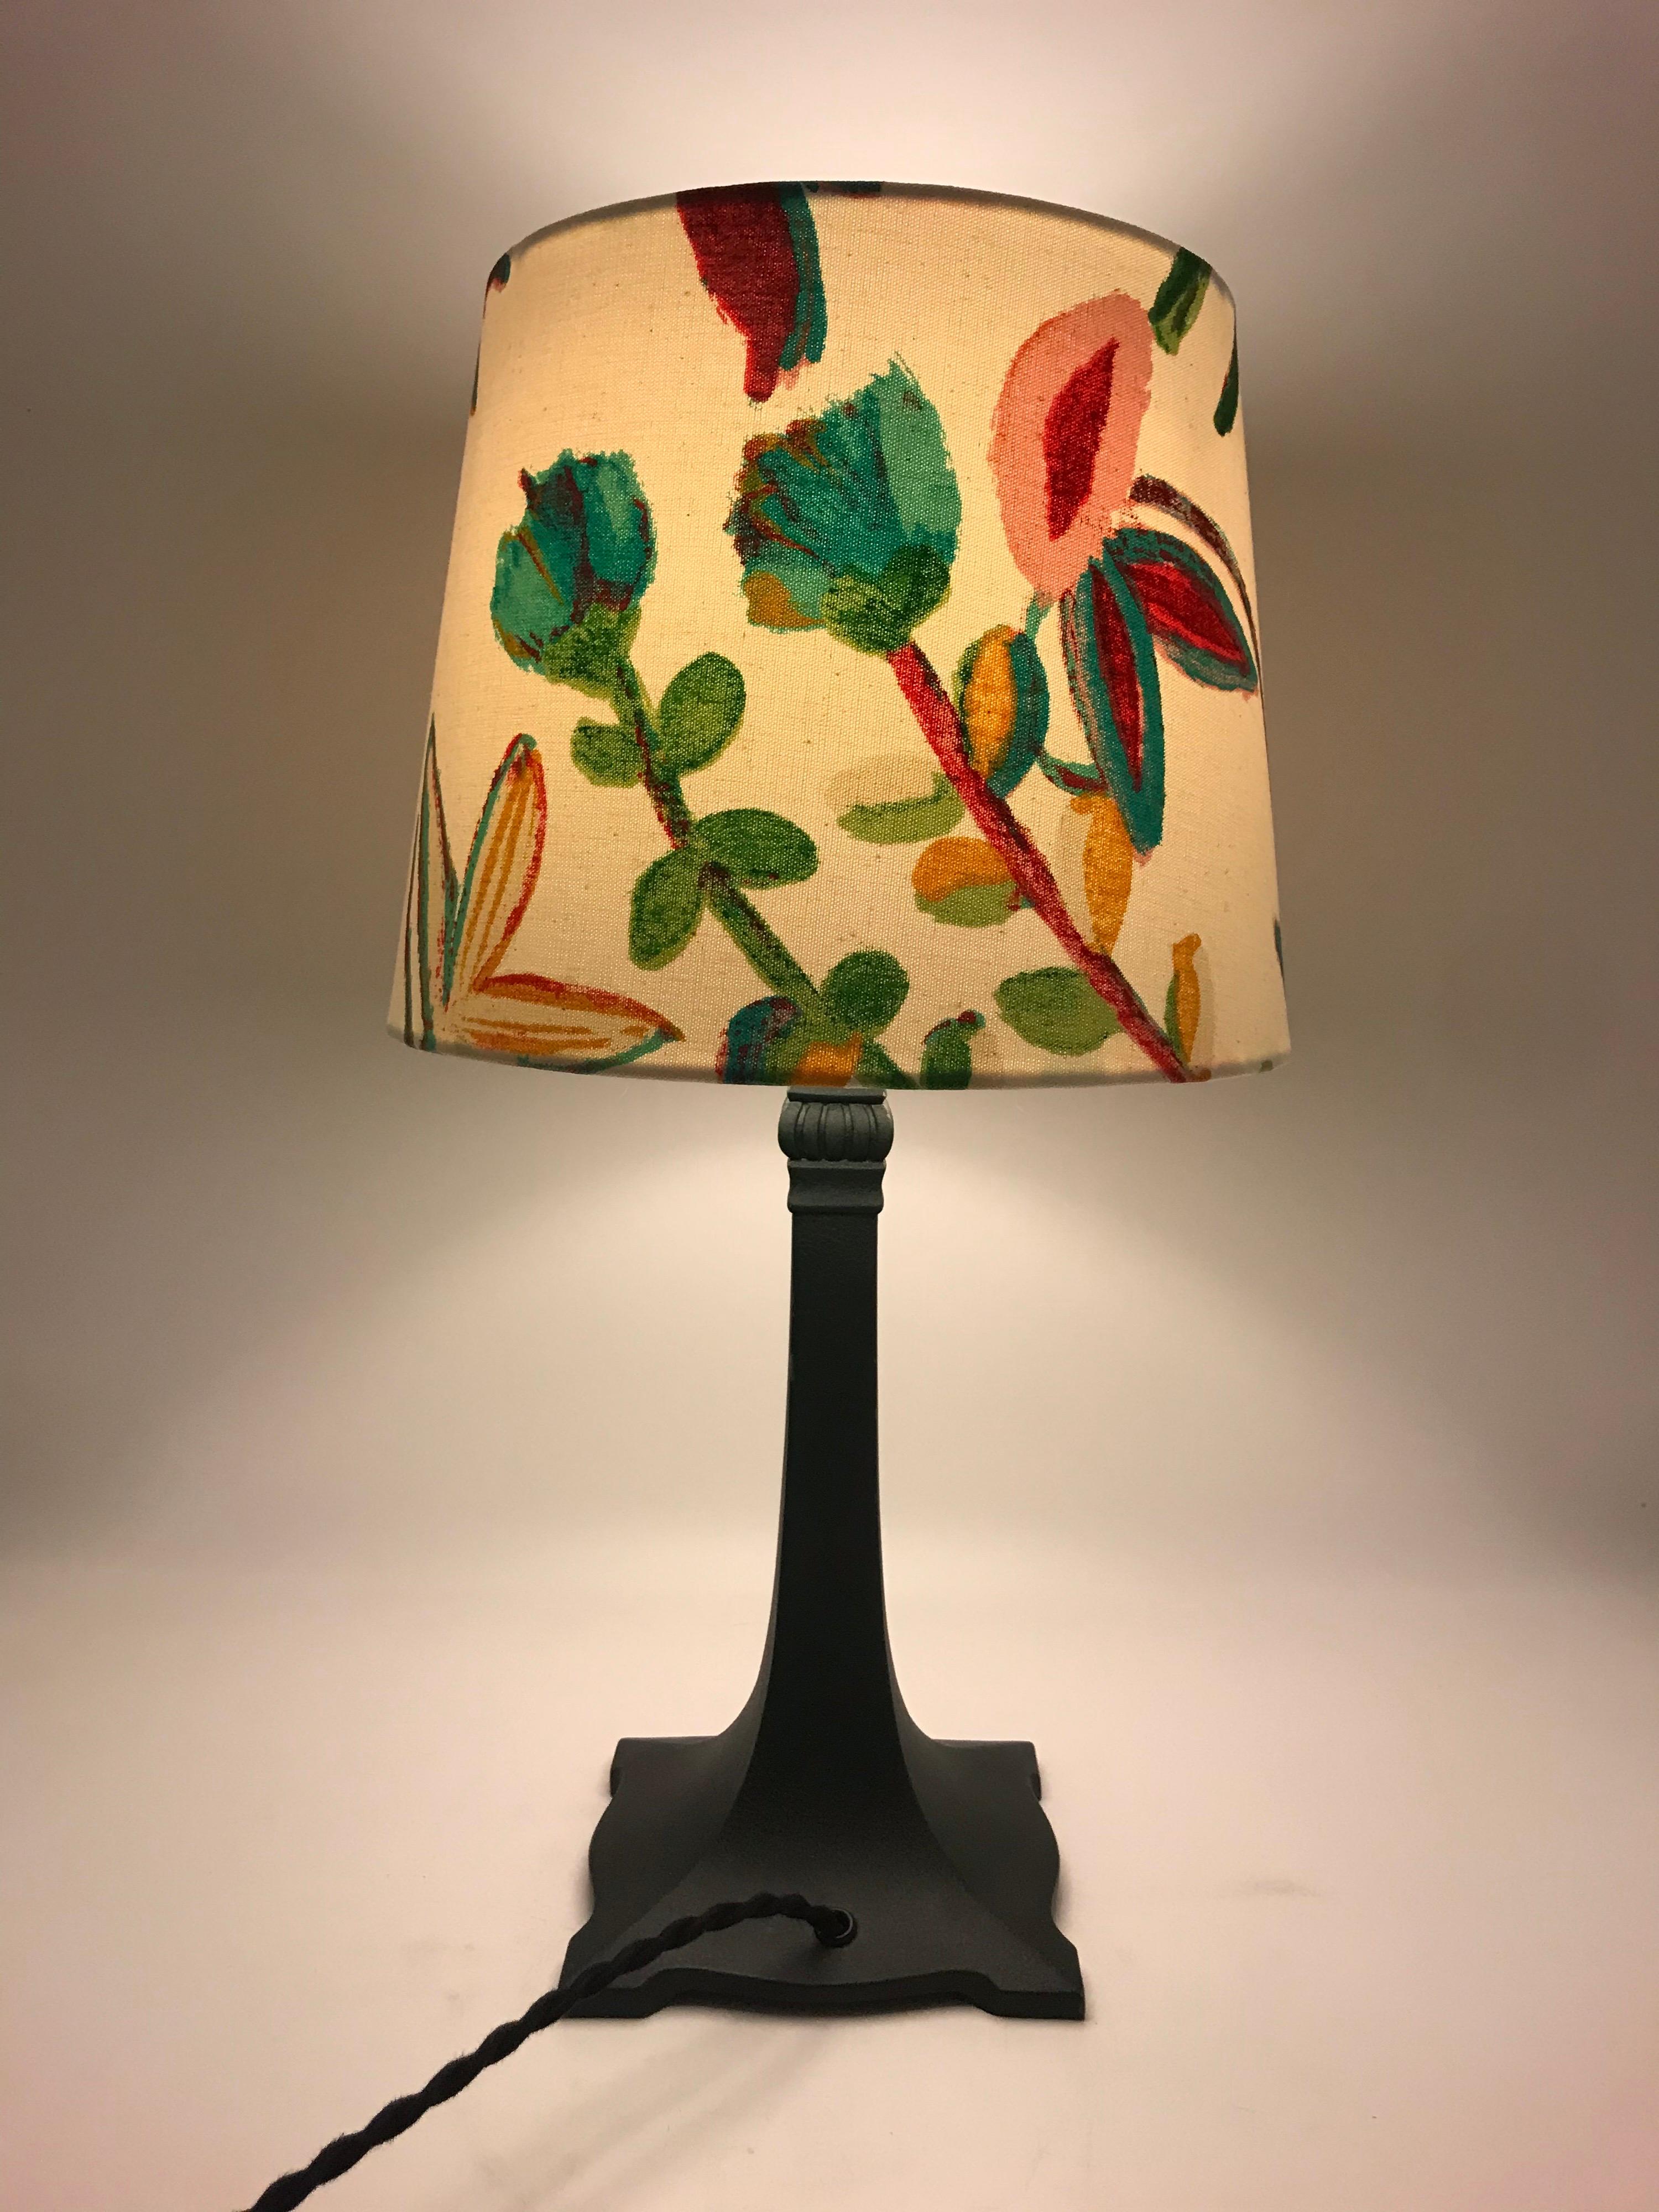 Schöne Art Deco Tischlampe in Bronze Metall-Legierung und mit original grüner Farbe auf der Oberfläche.
Der florale Druck auf dem weißen Baumwollschirm sieht zusammen mit dieser Lampe fantastisch aus.
Neu verkabelt und anschlussfertig.
Kann mit